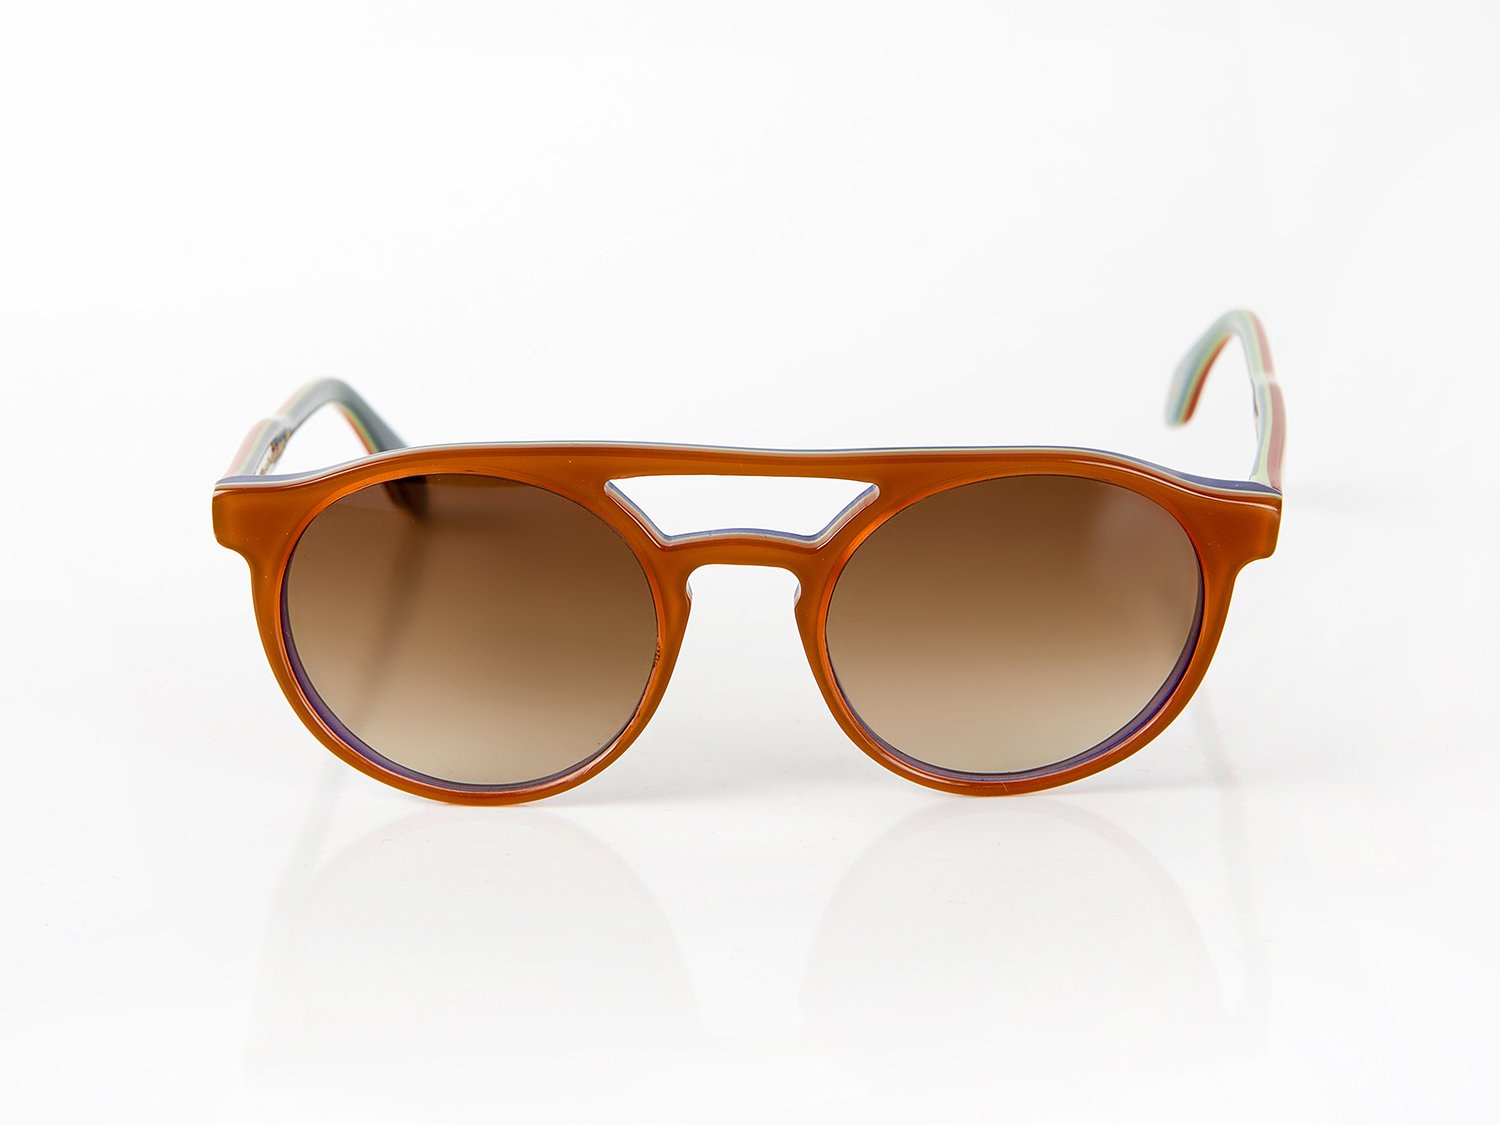 Napoli Design Sunglasses